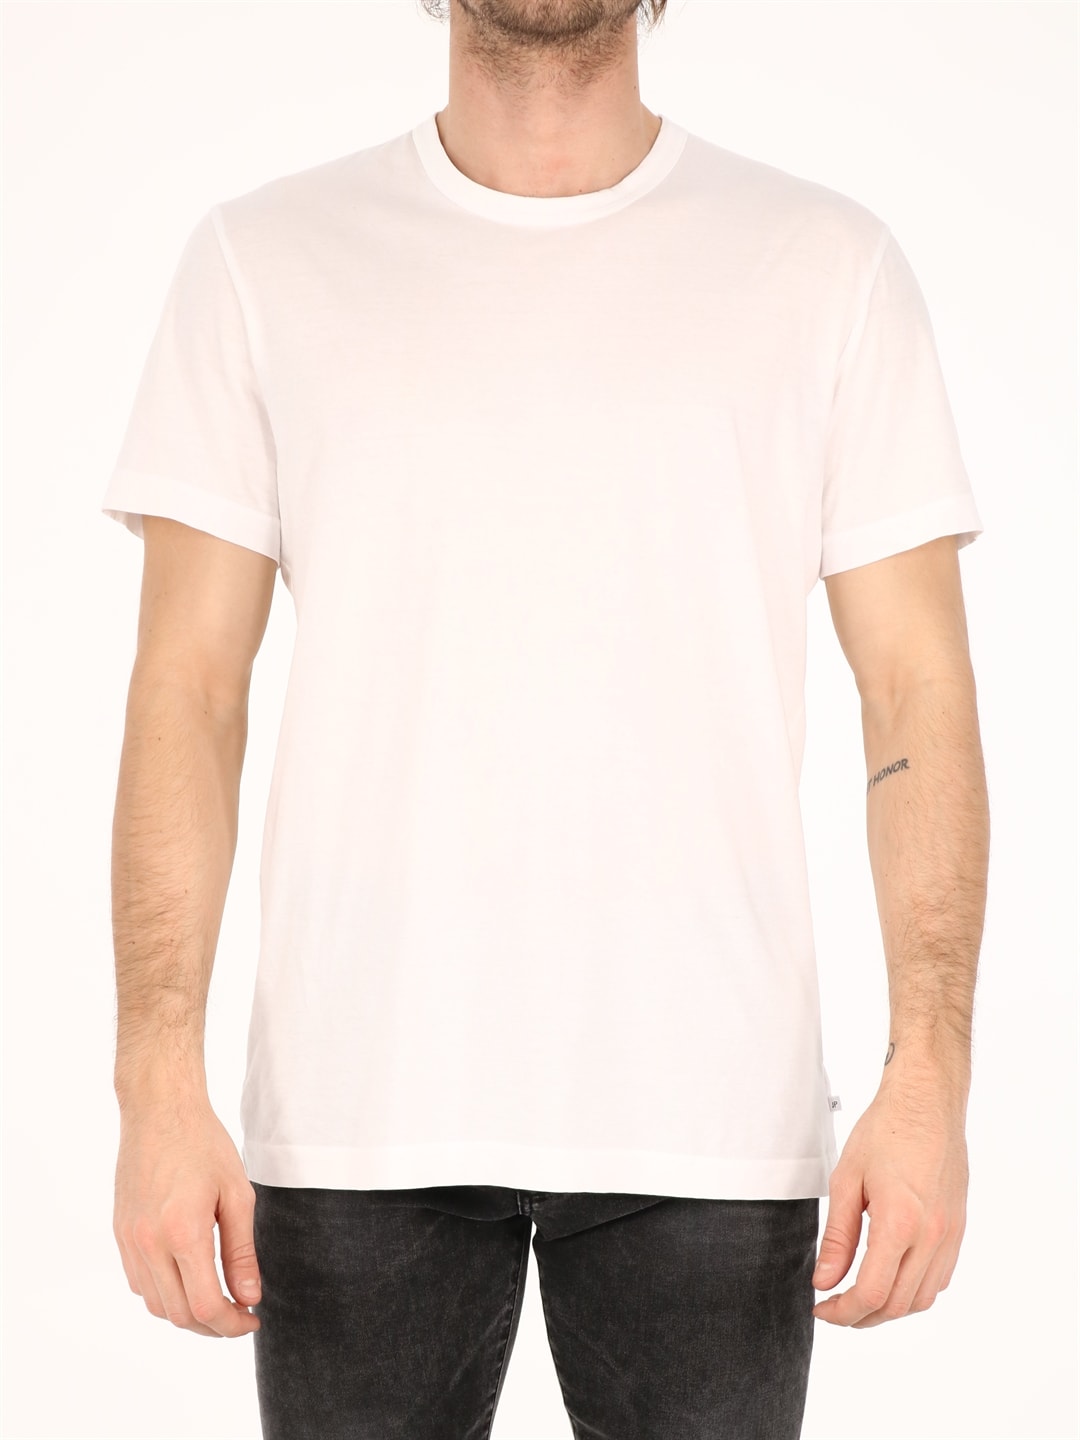 Shop James Perse White Cotton T-shirt